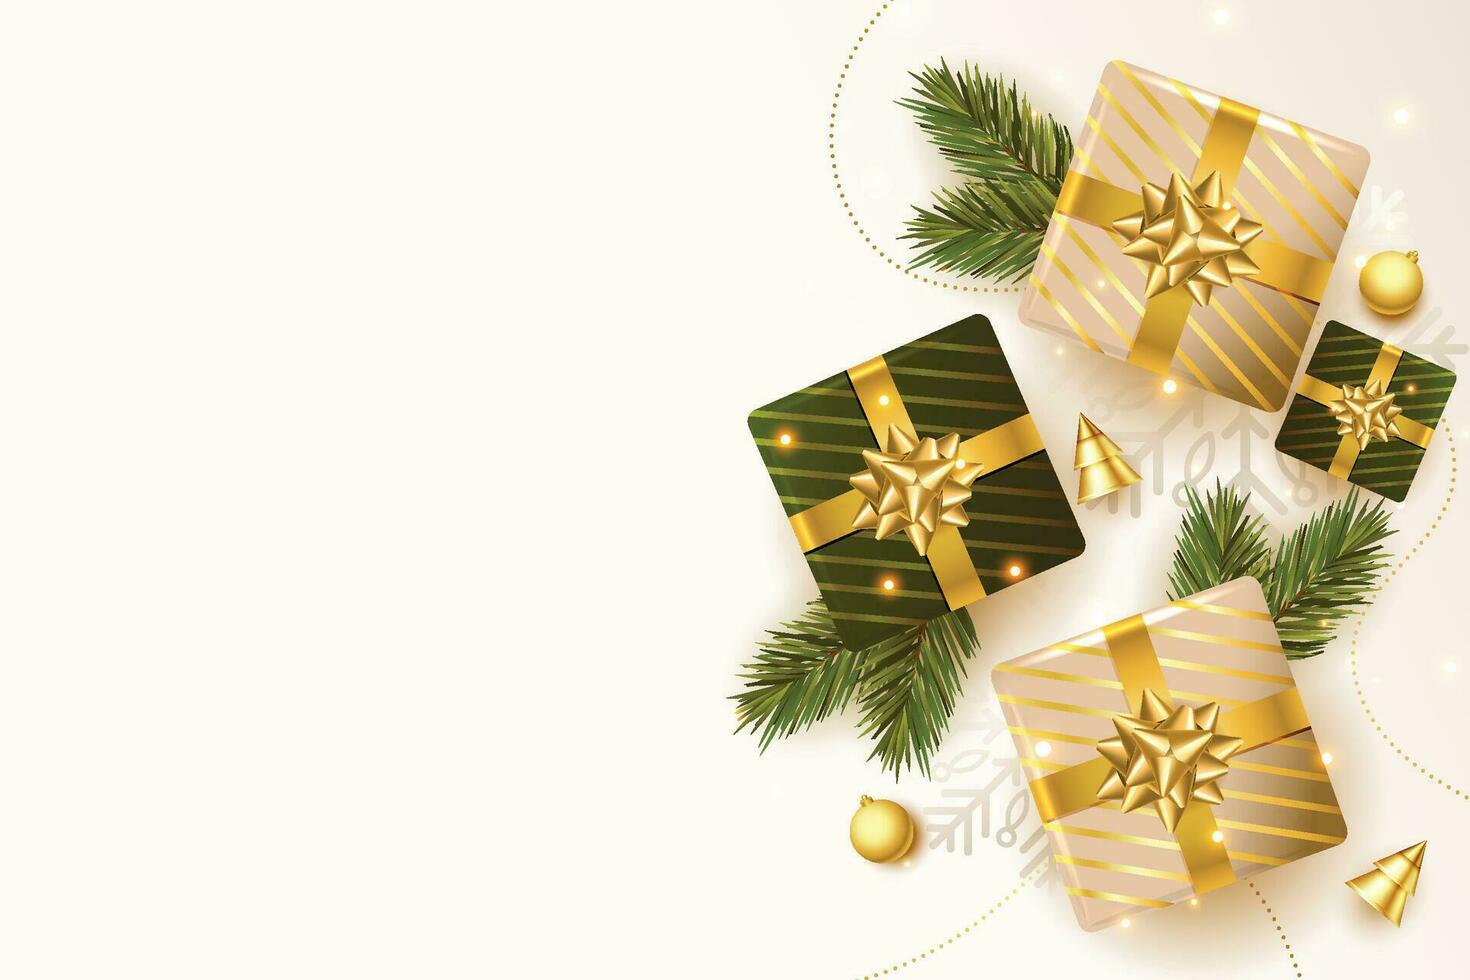 Kerstmis ballen, vakantie cadeaus met gouden boog, Spar boom takken, pijnboom kegels en glimmend sterren. illustratie kan worden gebruikt voor Kerstmis ontwerp, affiches, kaarten, websites en spandoeken. vector